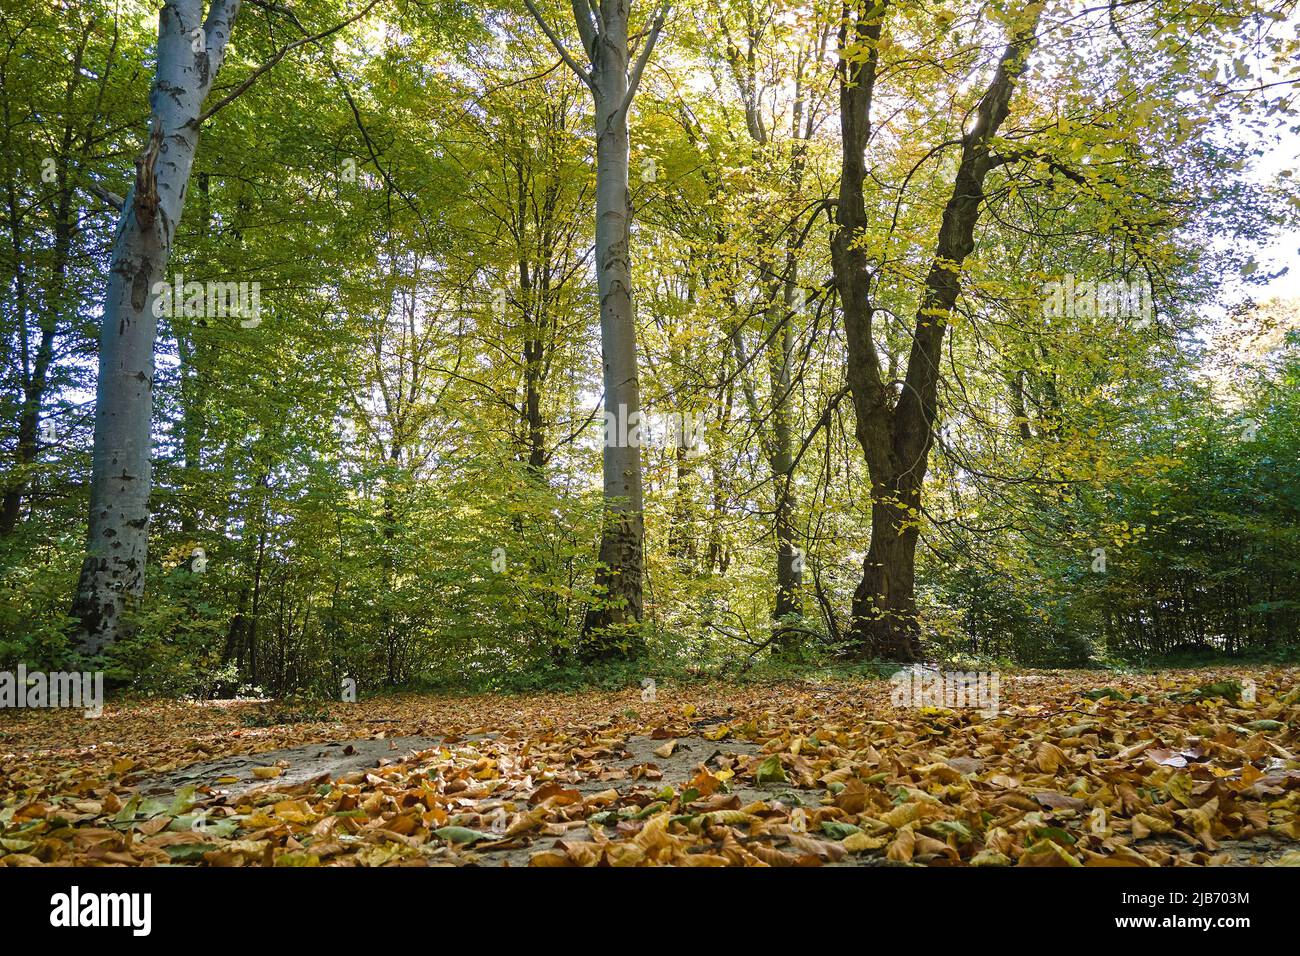 Wunderschöne Landschaft aus hellgrünen Wäldern mit üppigen Bäumen und heruntergefallenen trockenen Blättern, die den Boden im Herbstmorgen bedecken. Schöner wilder Wald im Morgengrauen. Stockfoto